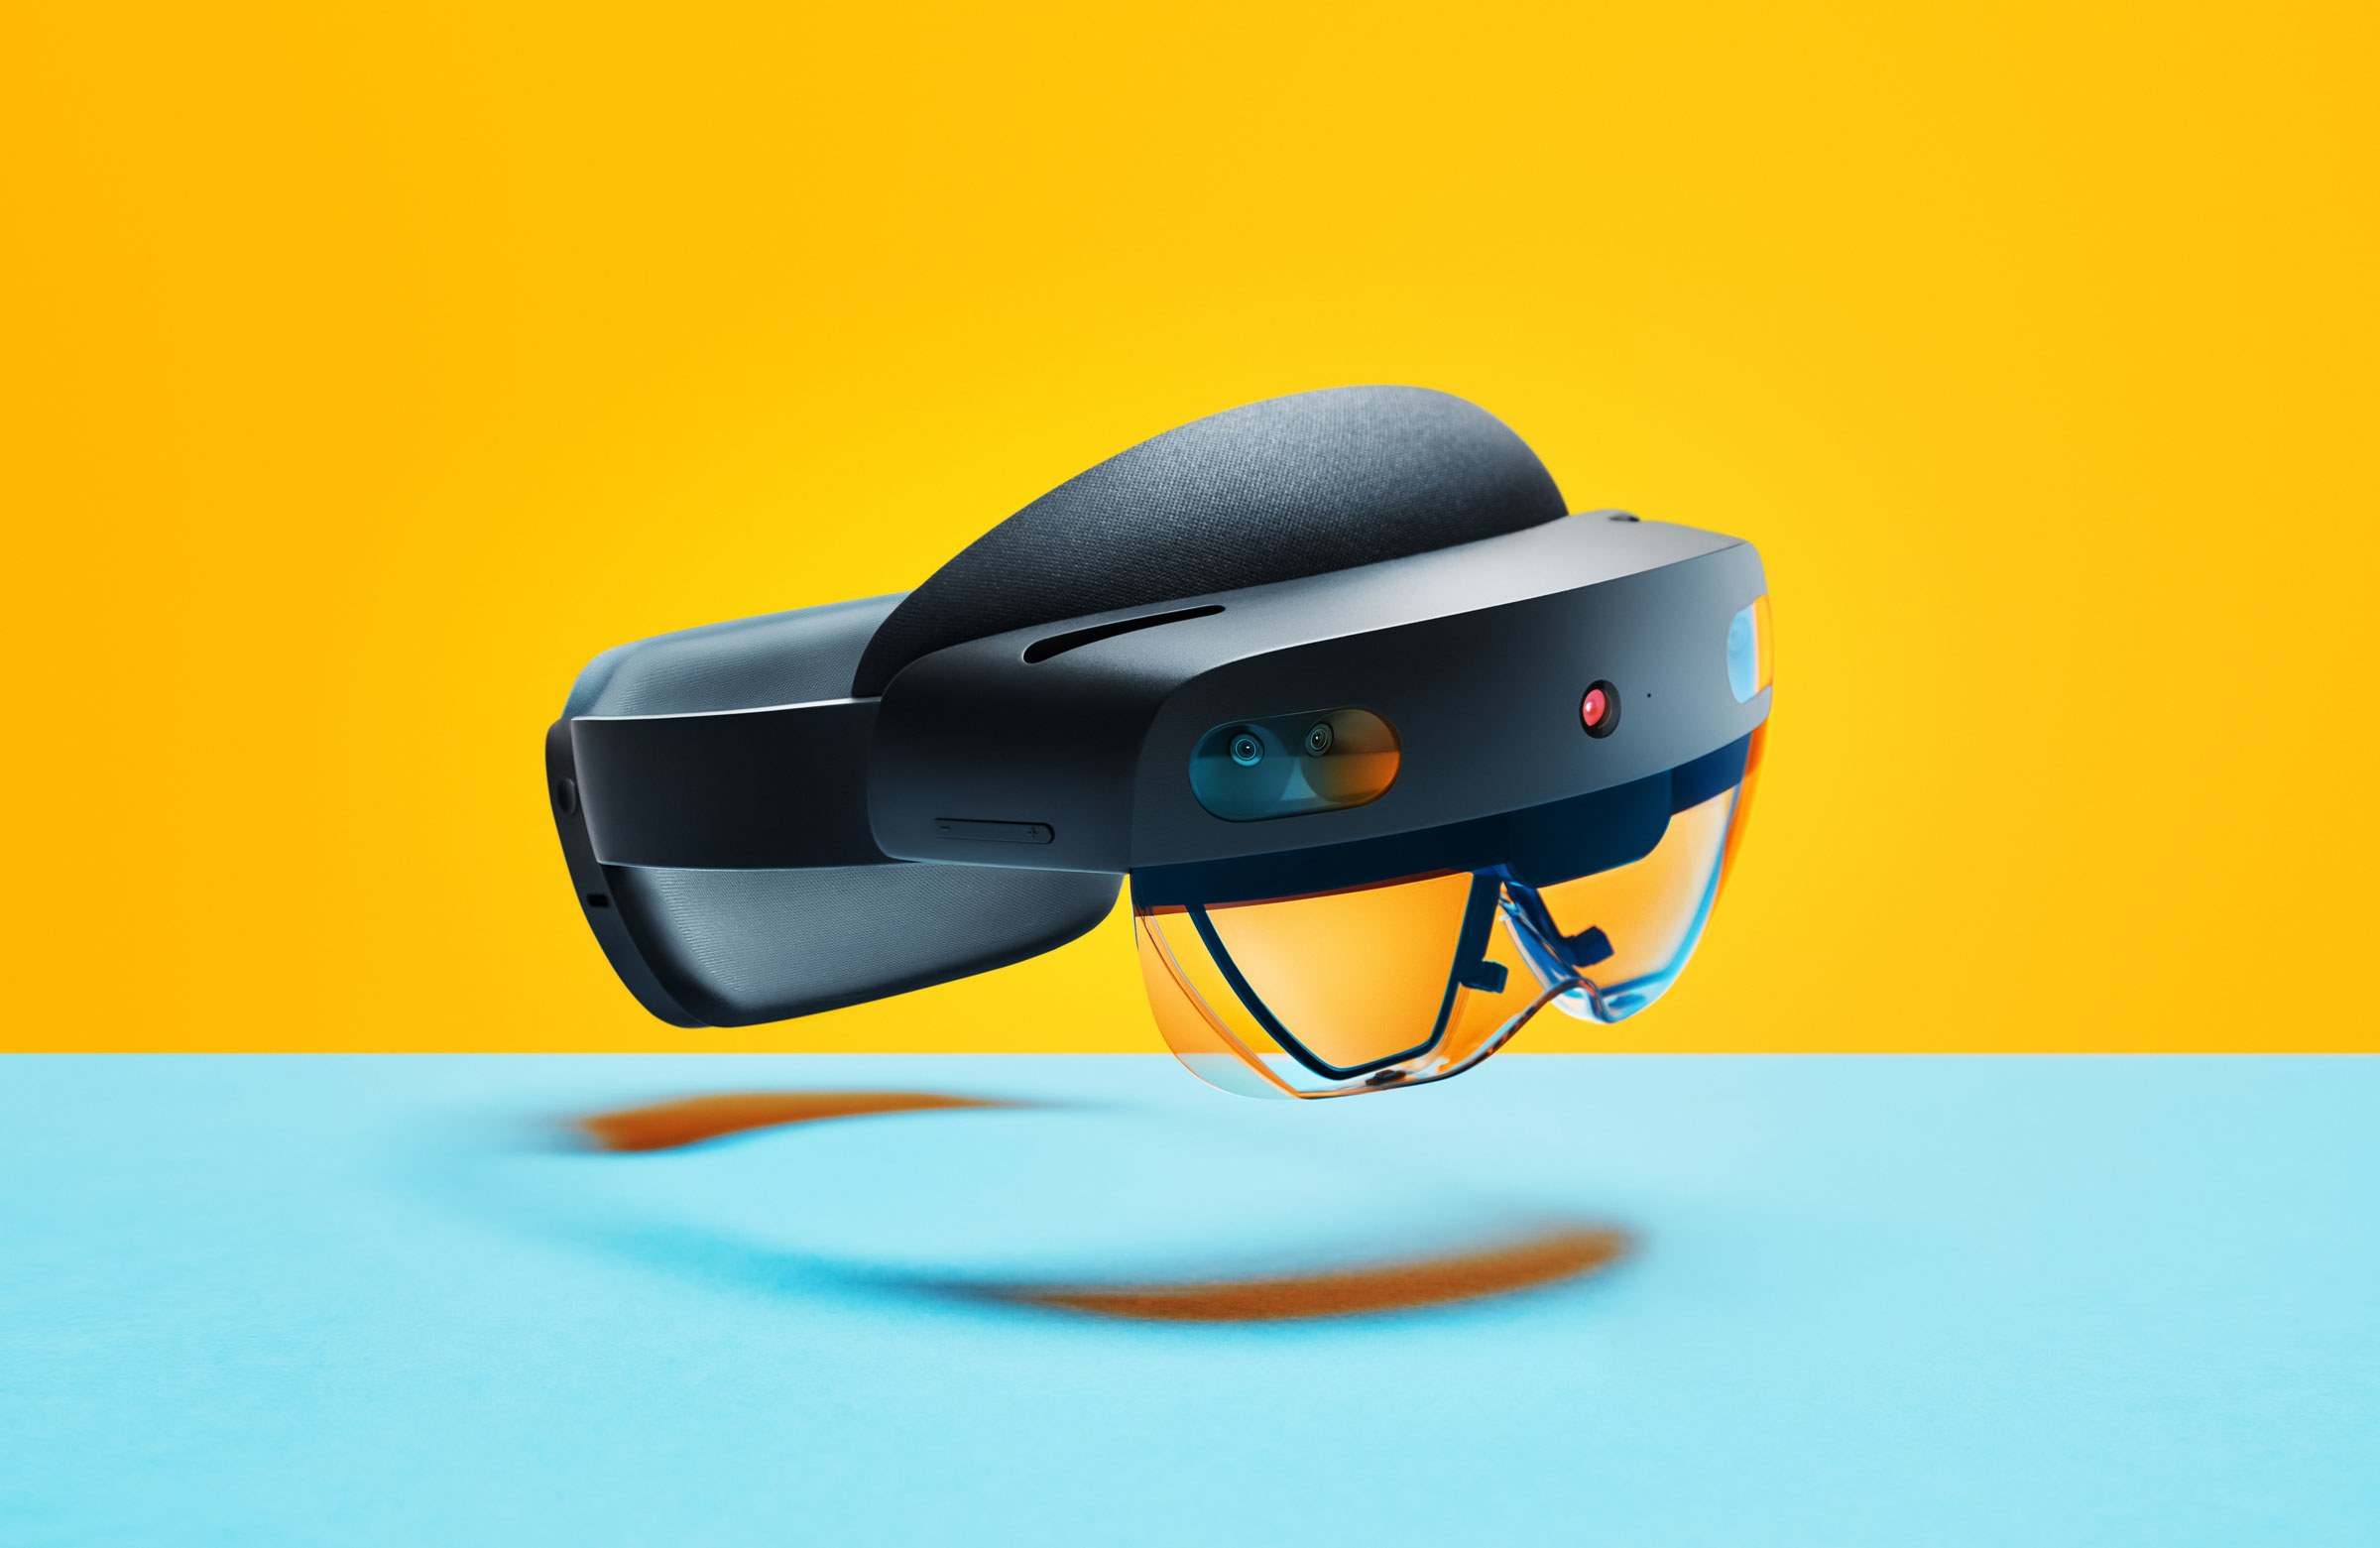 نظارة الواقع المختلط HoloLens 2 ستُطرح في الأسواق الشهر المقبل